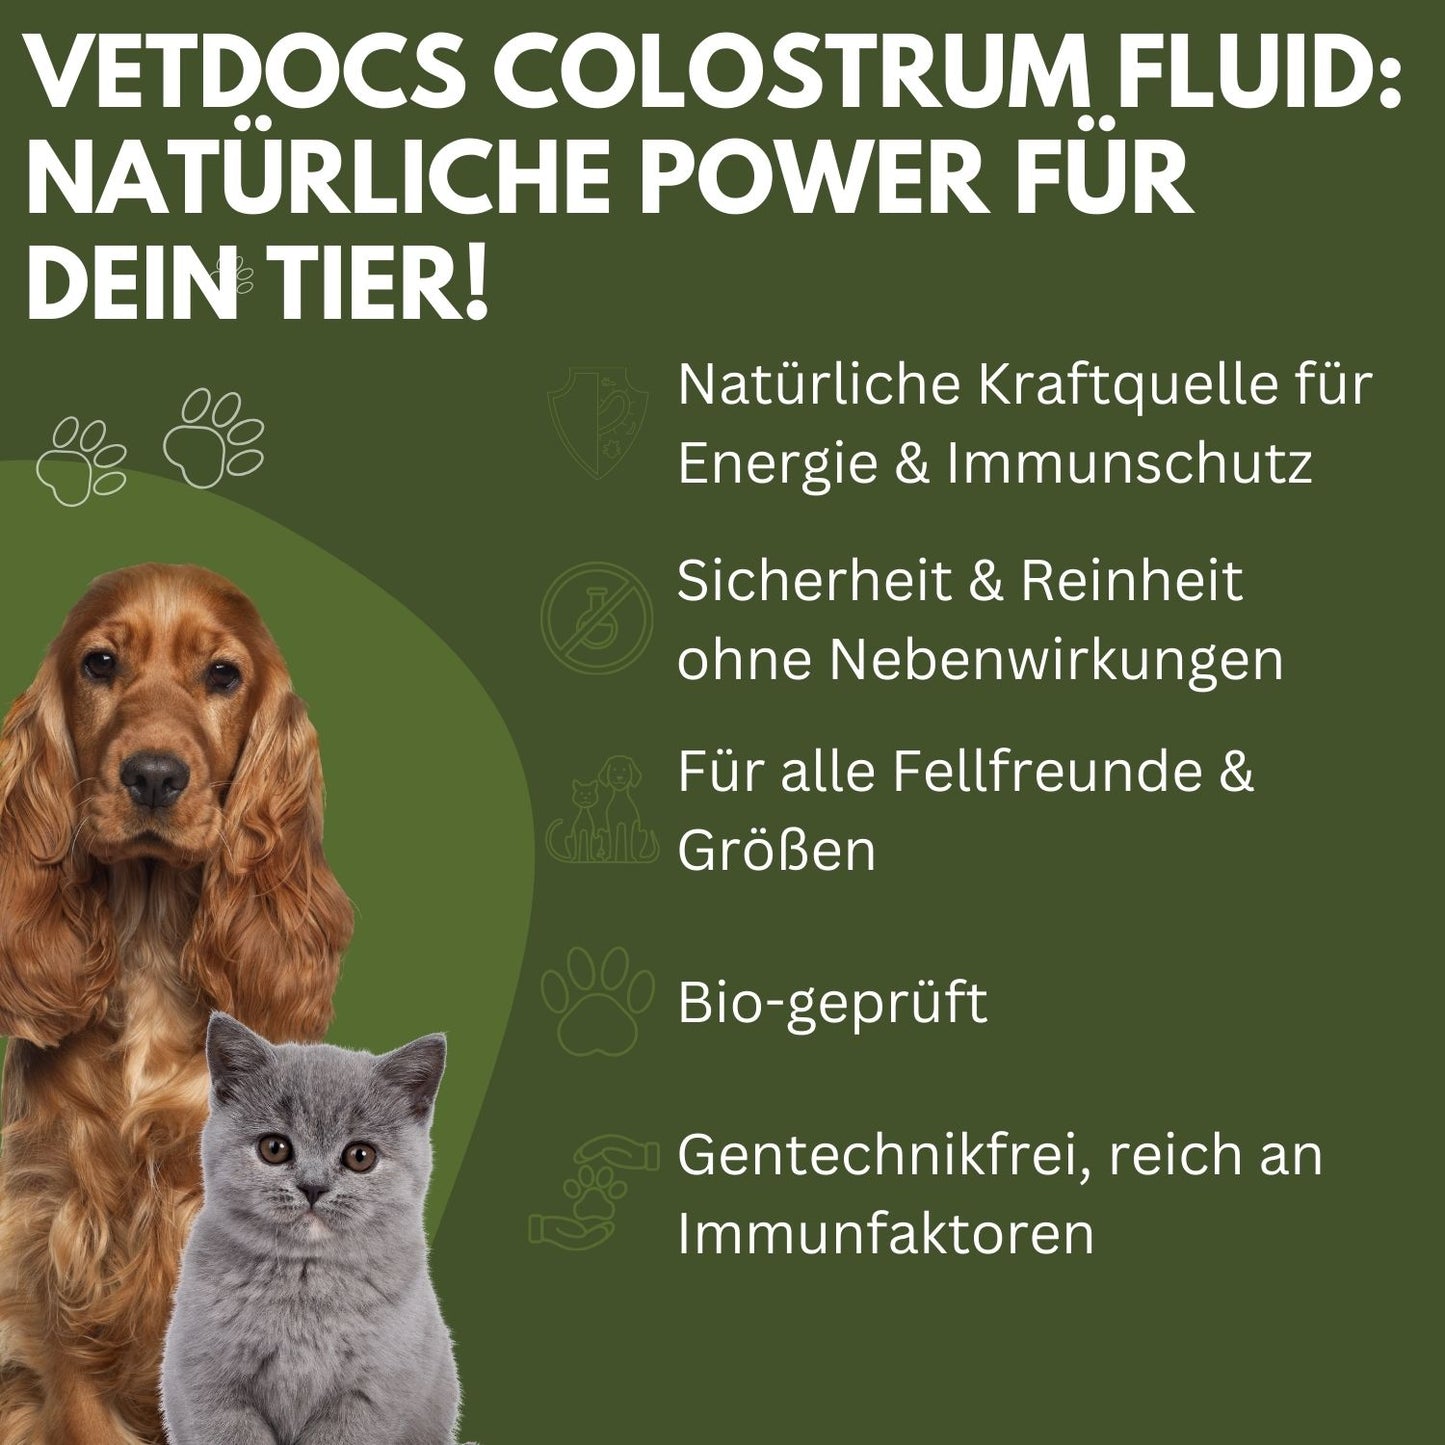 vetDocs Colostrum 3er Set  - Das Premium-Nahrungsergänzungsmittel für Hunde und Katzen